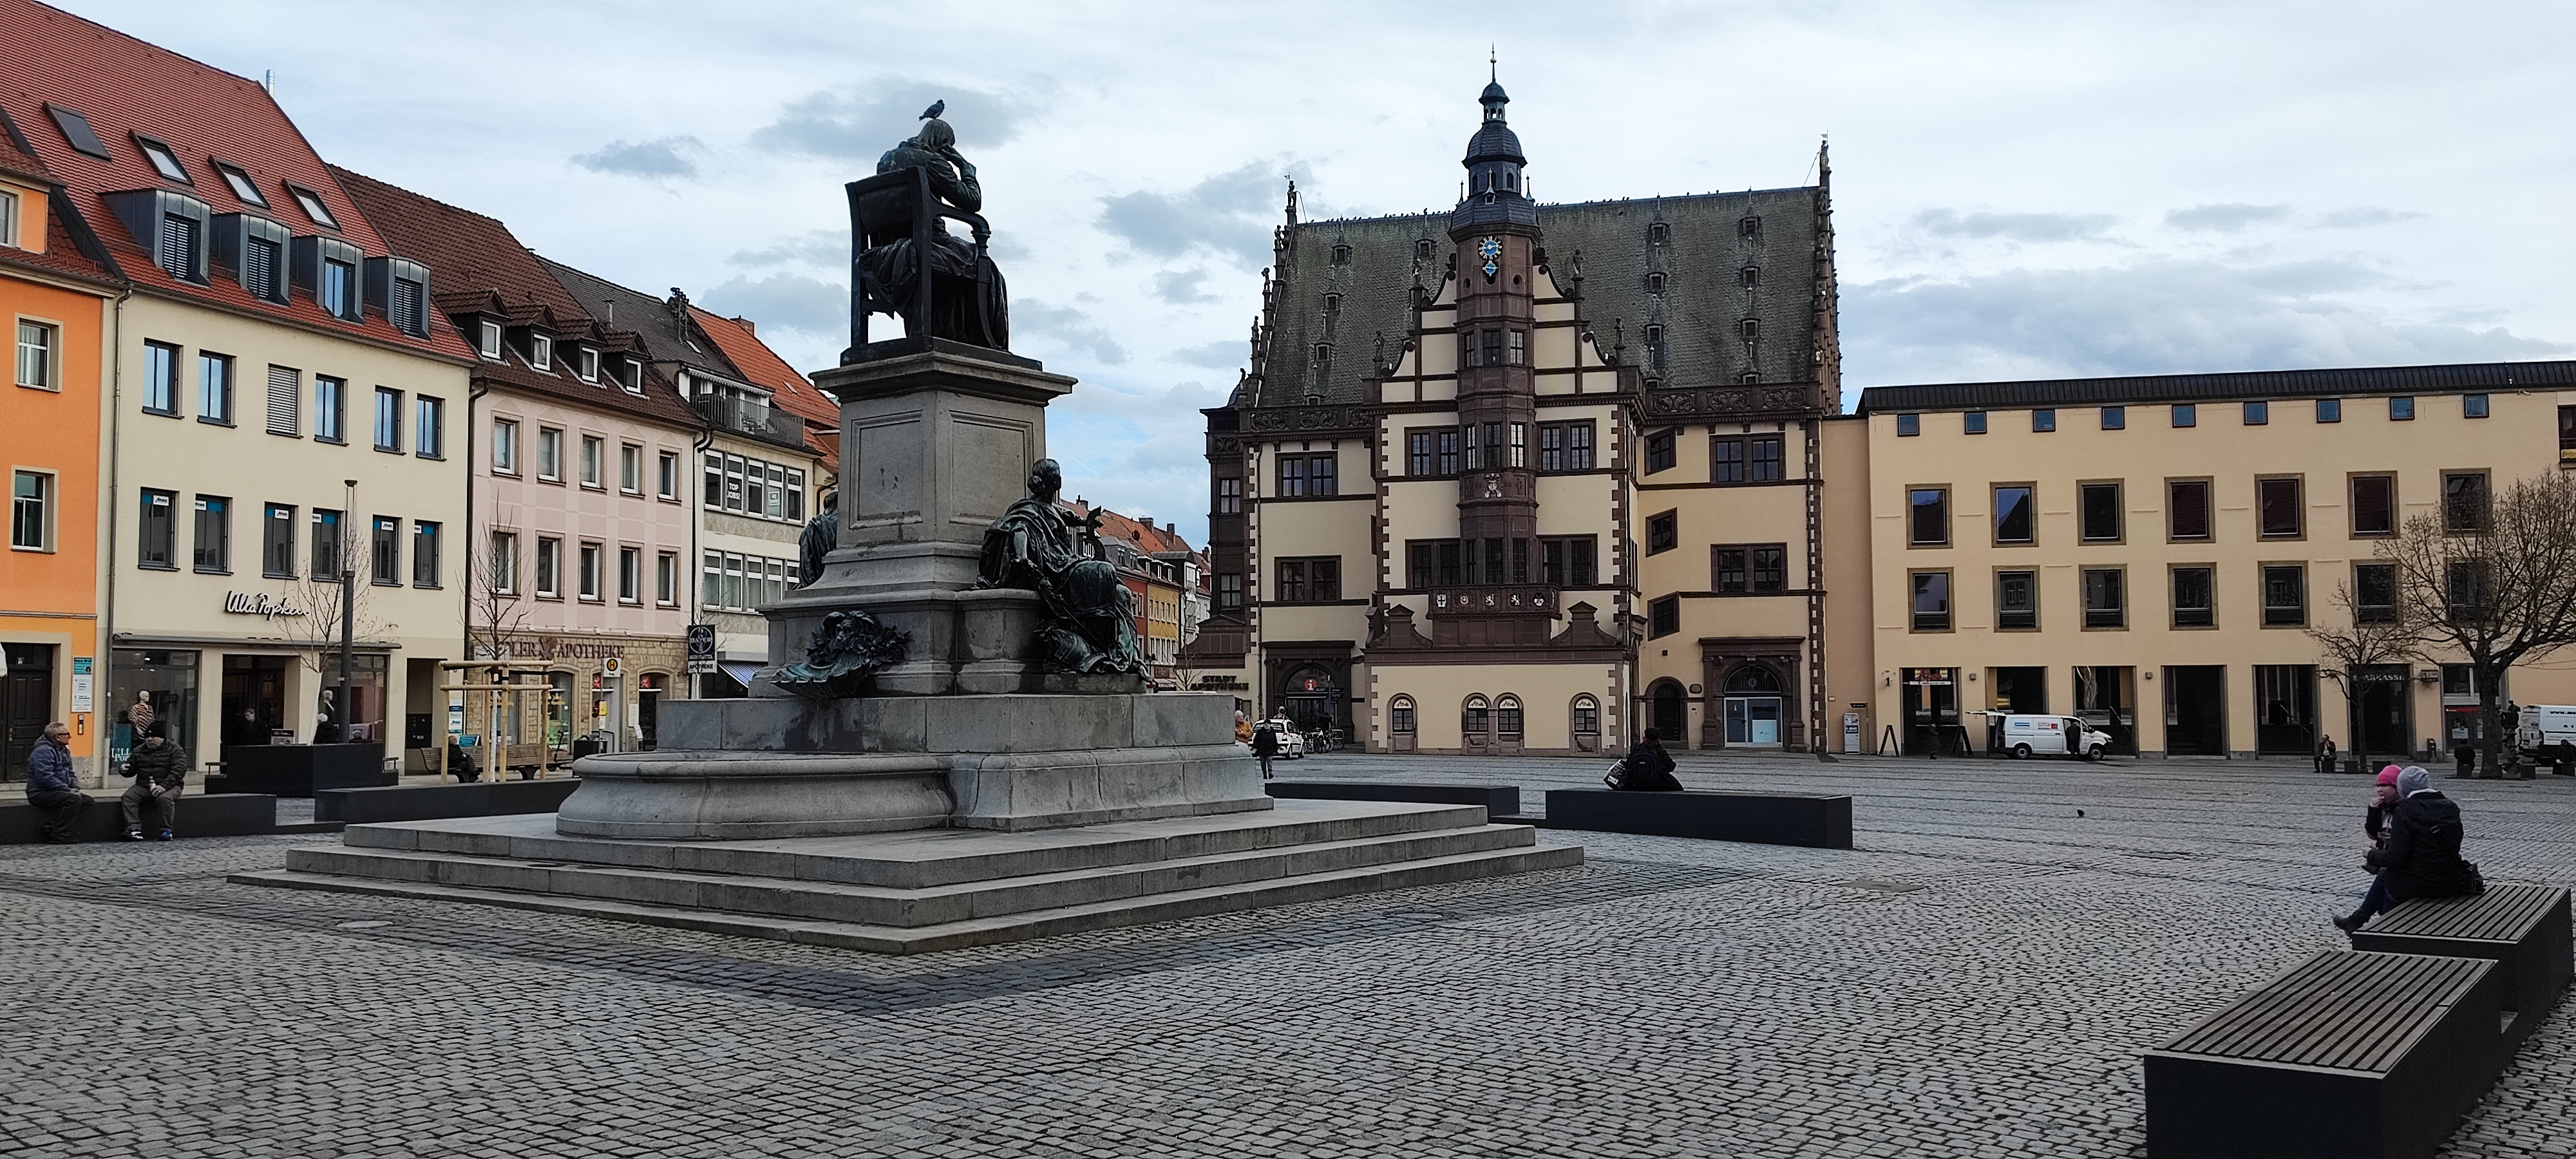 Rathaus mit Rückert-Denkmal am Schweinfurter Markt